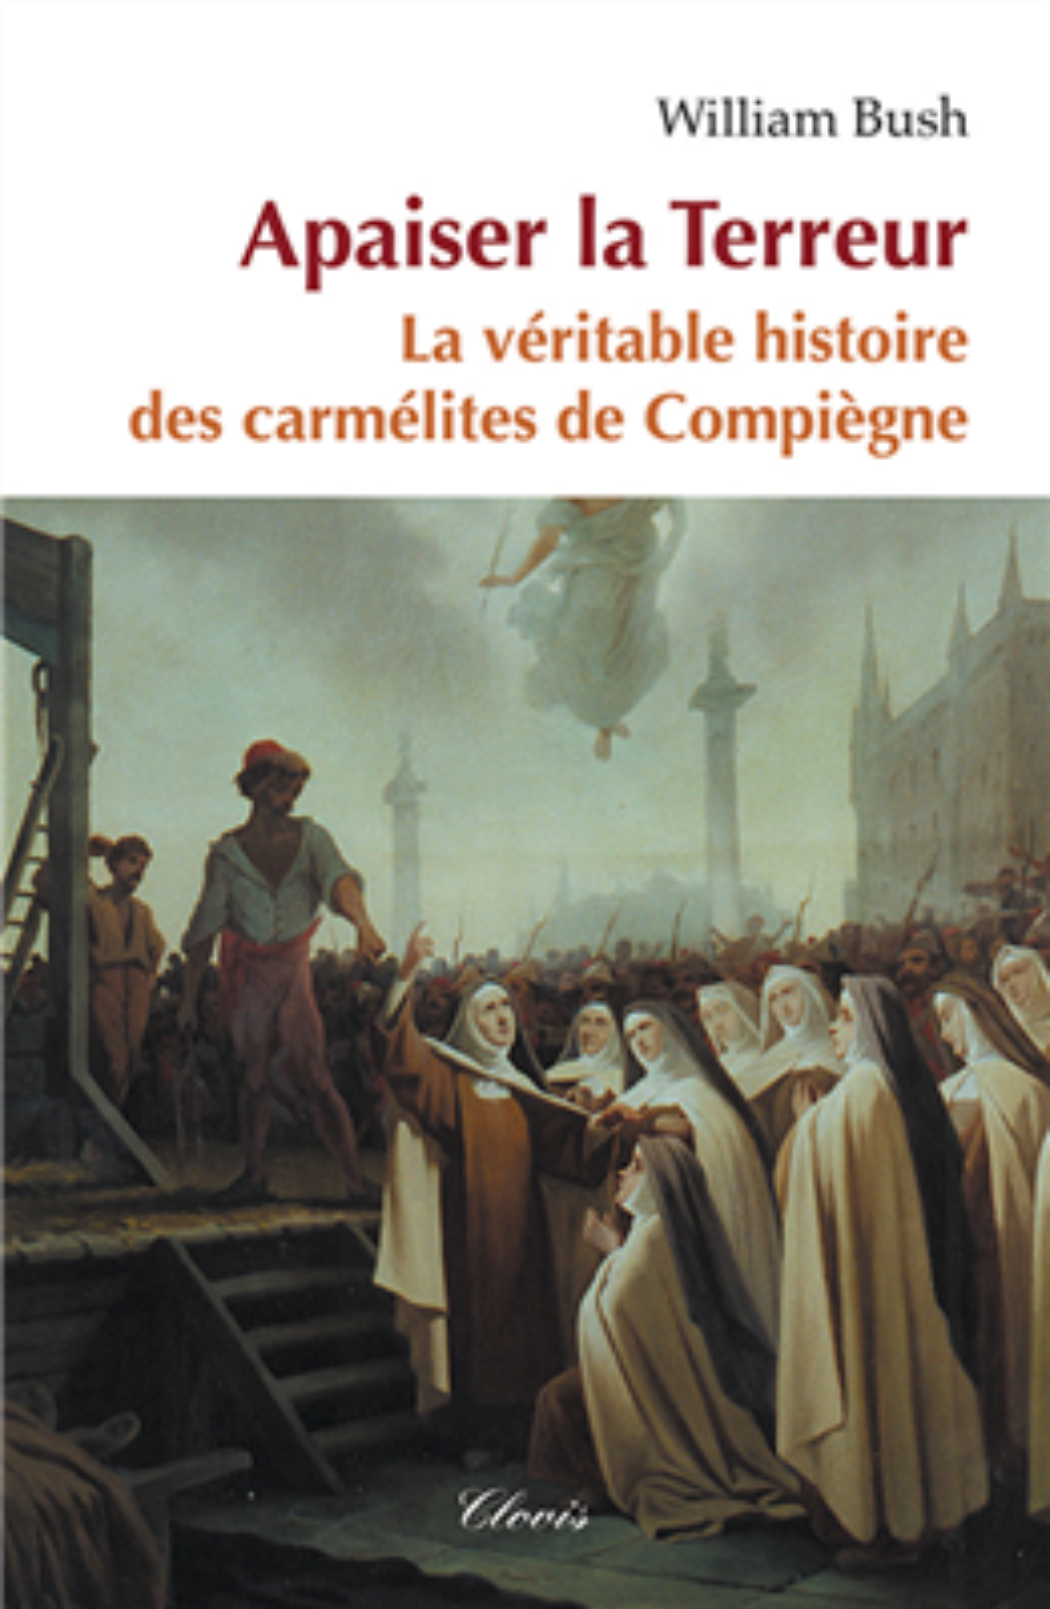 Le sacrifice propitiatoire des carmélites de Compiègne